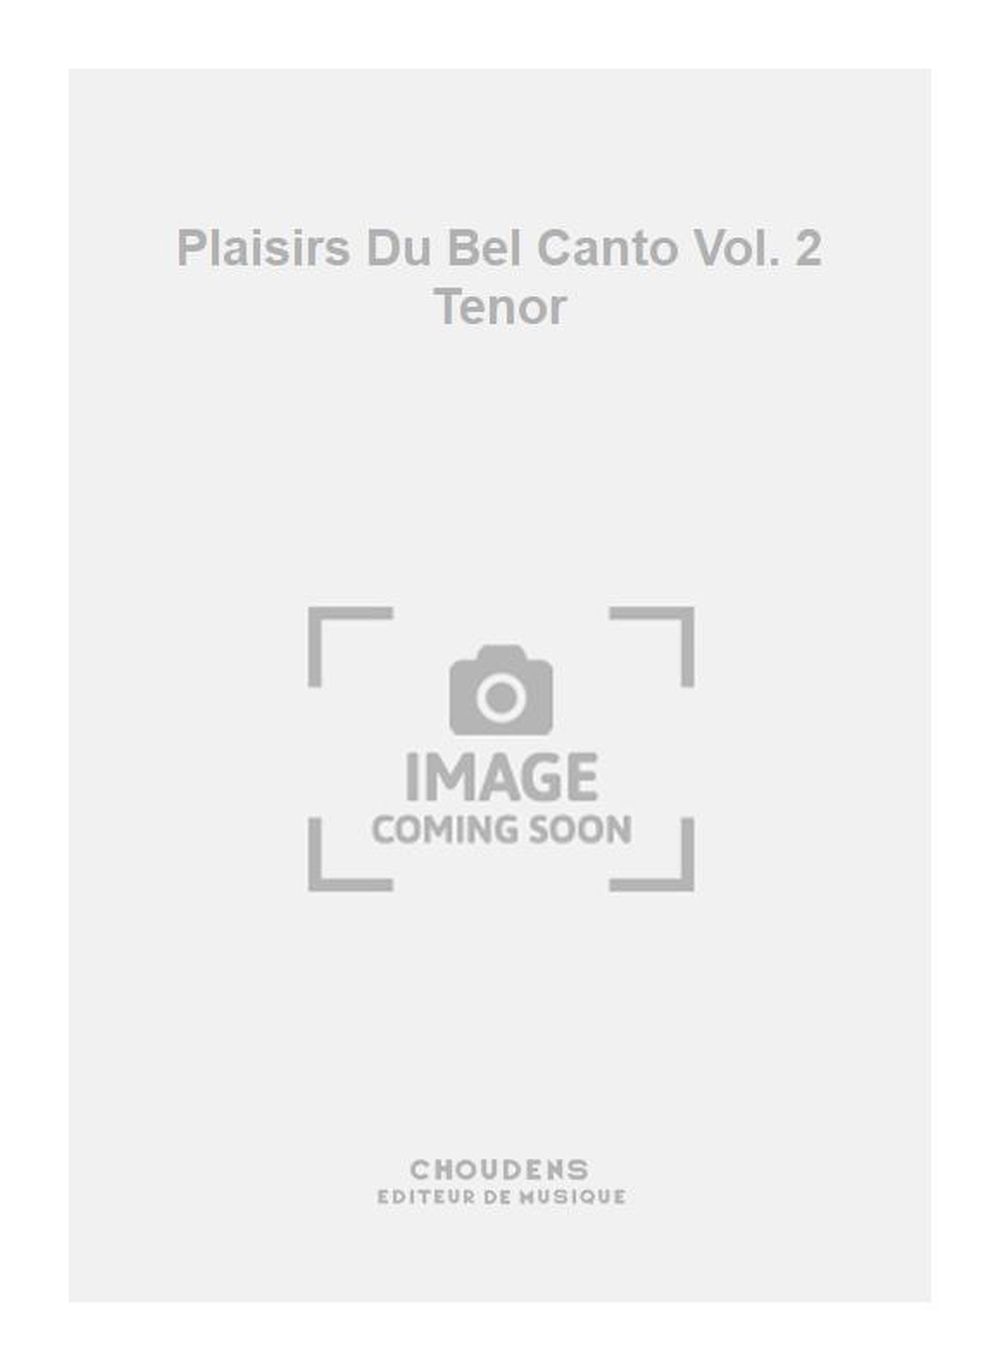 Plaisirs Du Bel Canto Vol. 2 Tenor